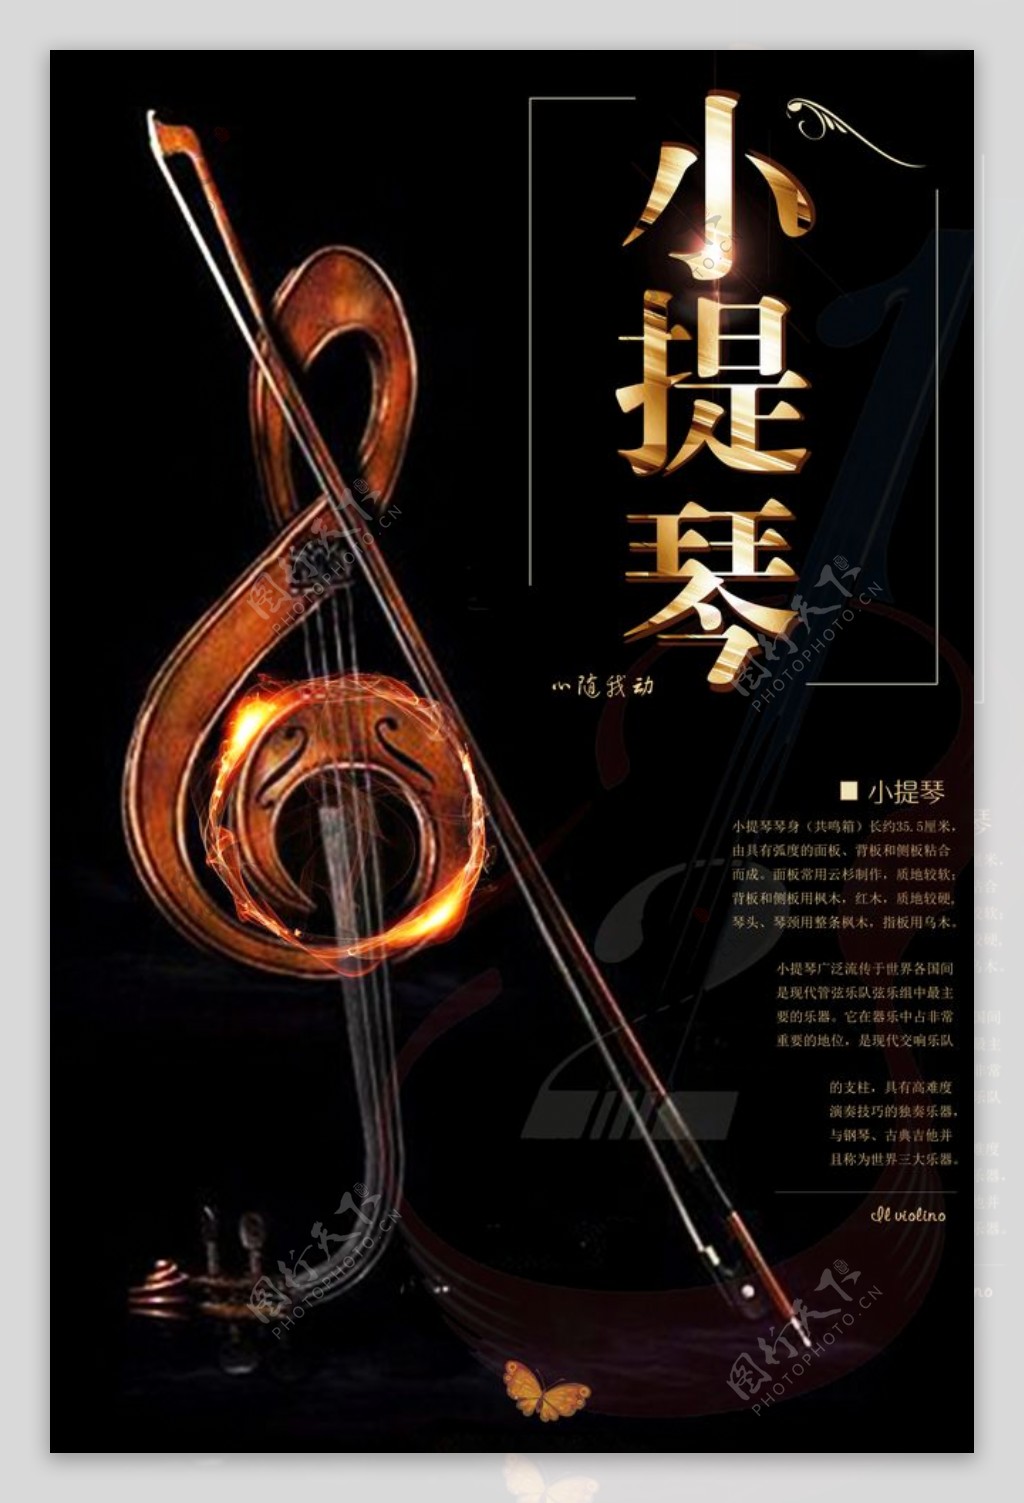 高雅小提琴精美创意海报